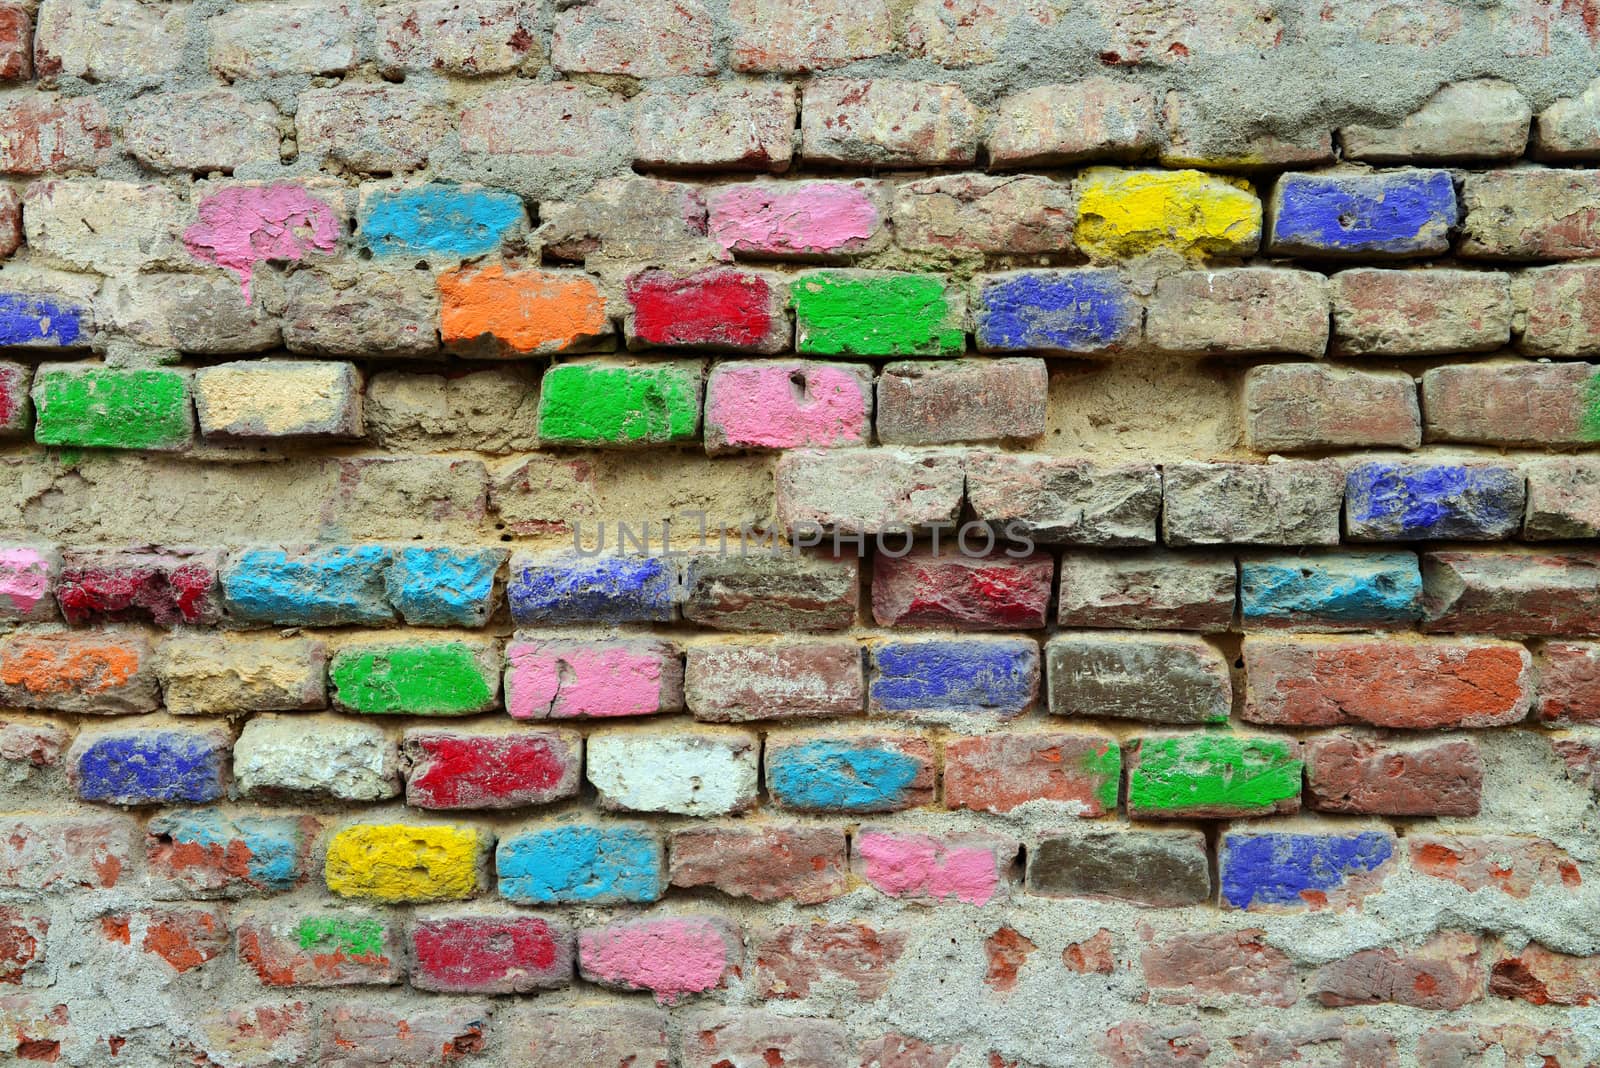 colored bricks by tony4urban